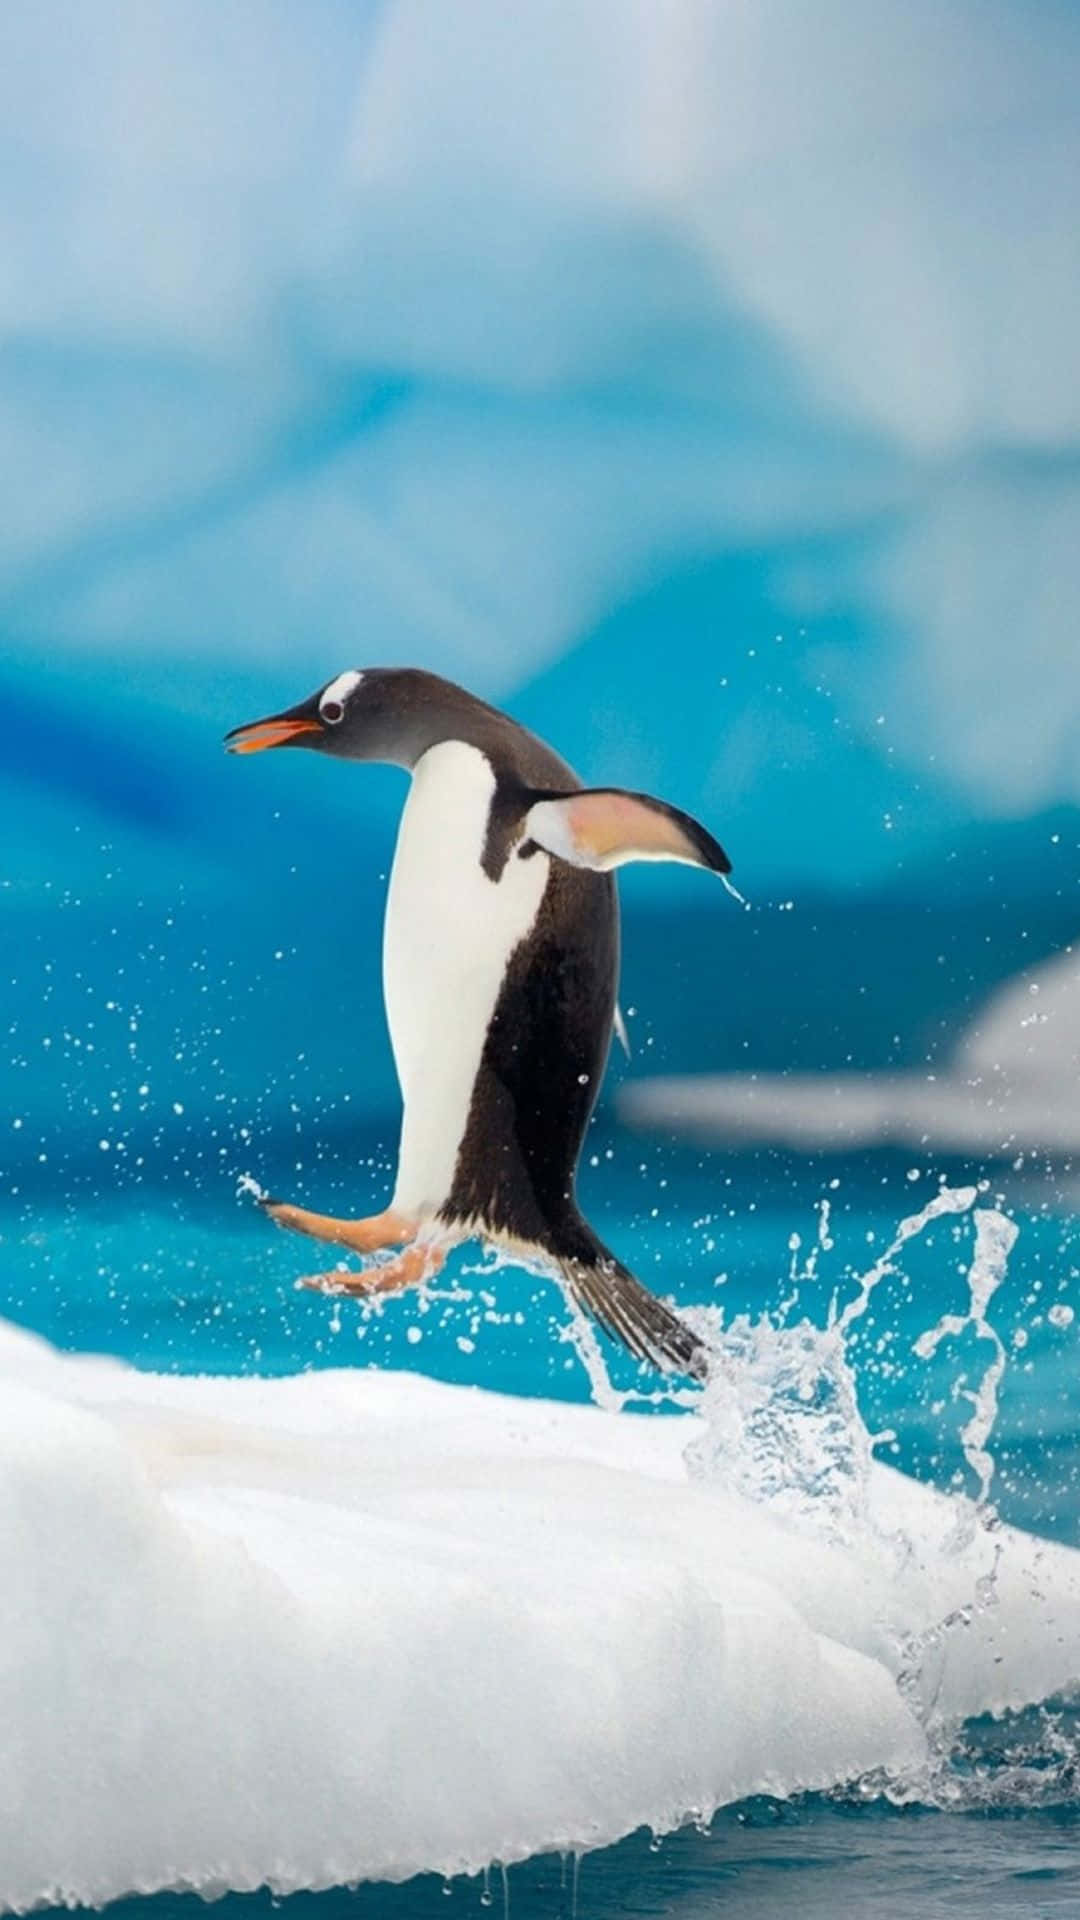 Liebenswertegruppe Von Gentoo-pinguinen, Die Sich In Der Kalten Antarktis Zusammenscharen.